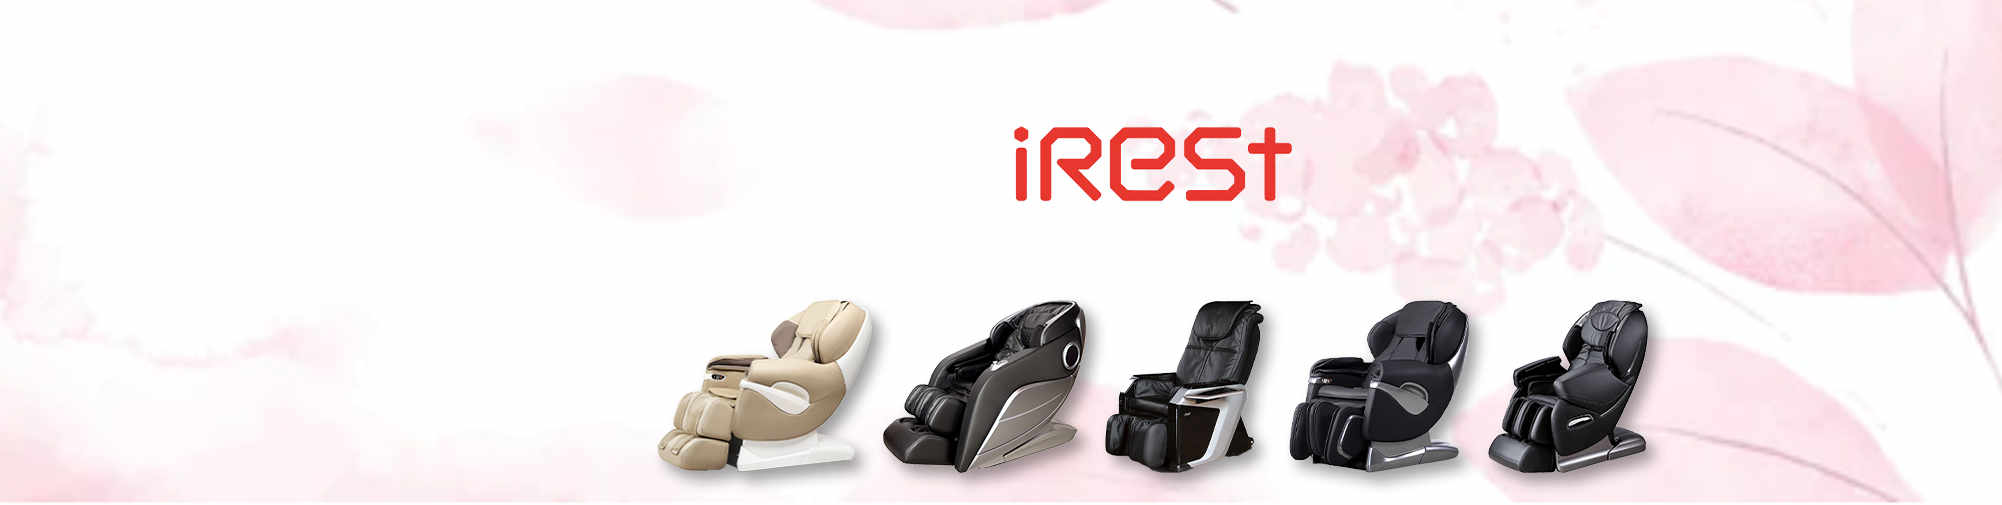 iRest - un vent de fraîcheur sur le marché des fauteuils de massage | Le monde des fauteuils de massage